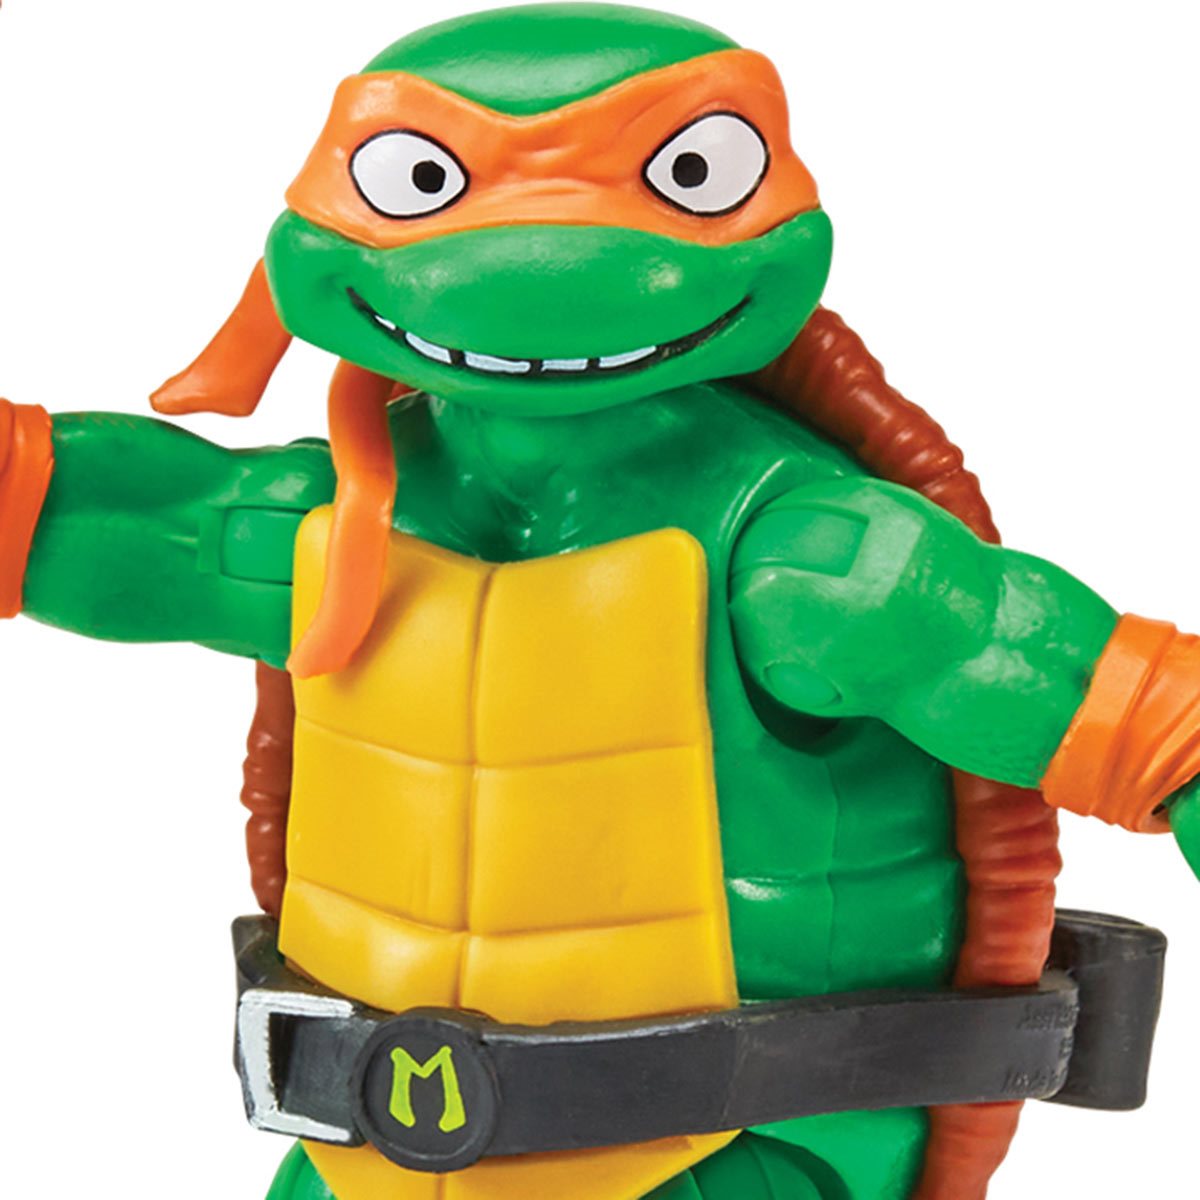 Teenage Mutant Ninja Turtles: Mutant Mayhem Michelangelo Action Figure